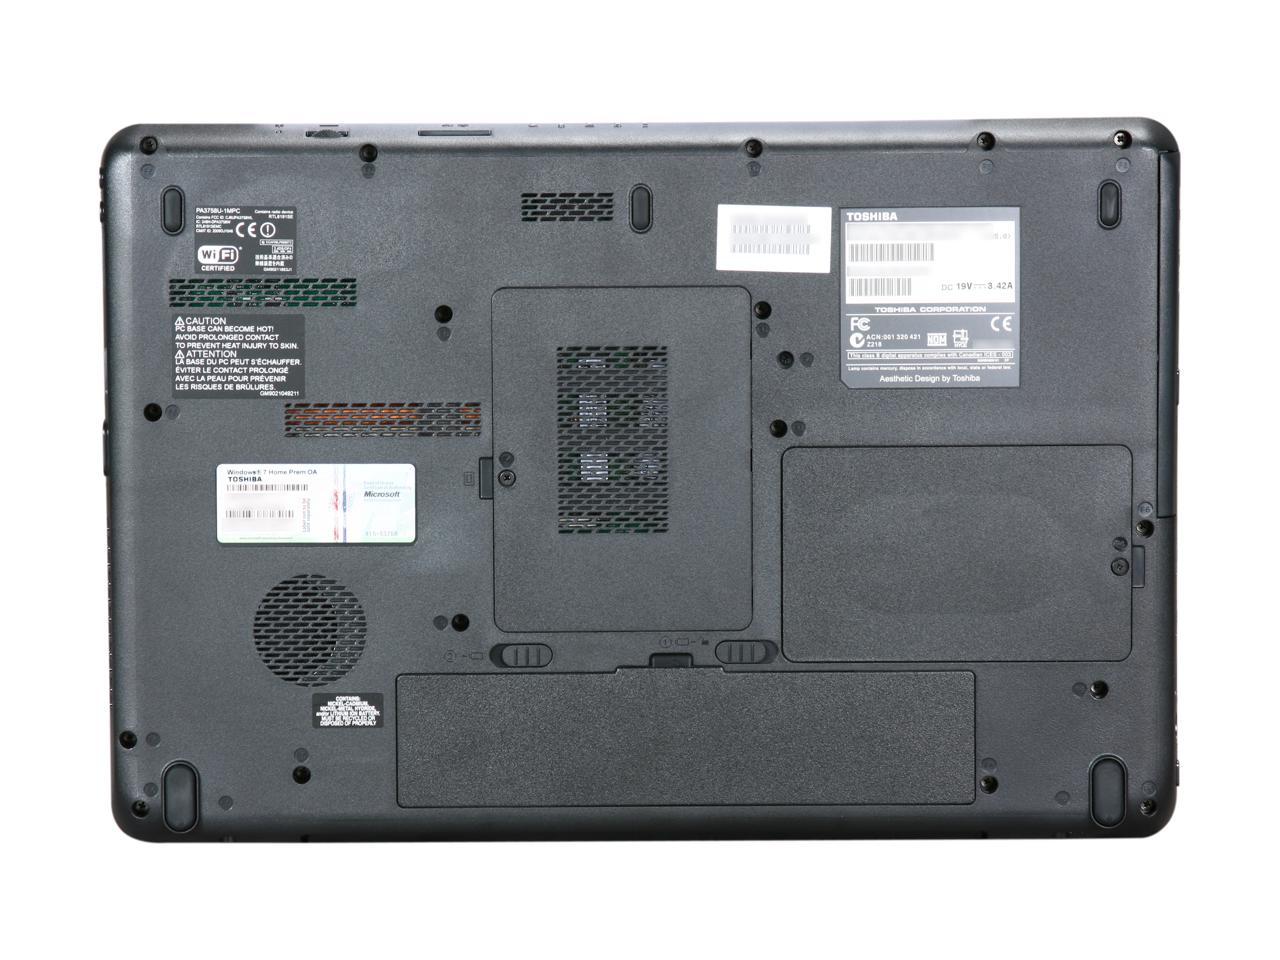 TOSHIBA Laptop Satellite L505-LS5021 Intel Pentium dual-core T4400 